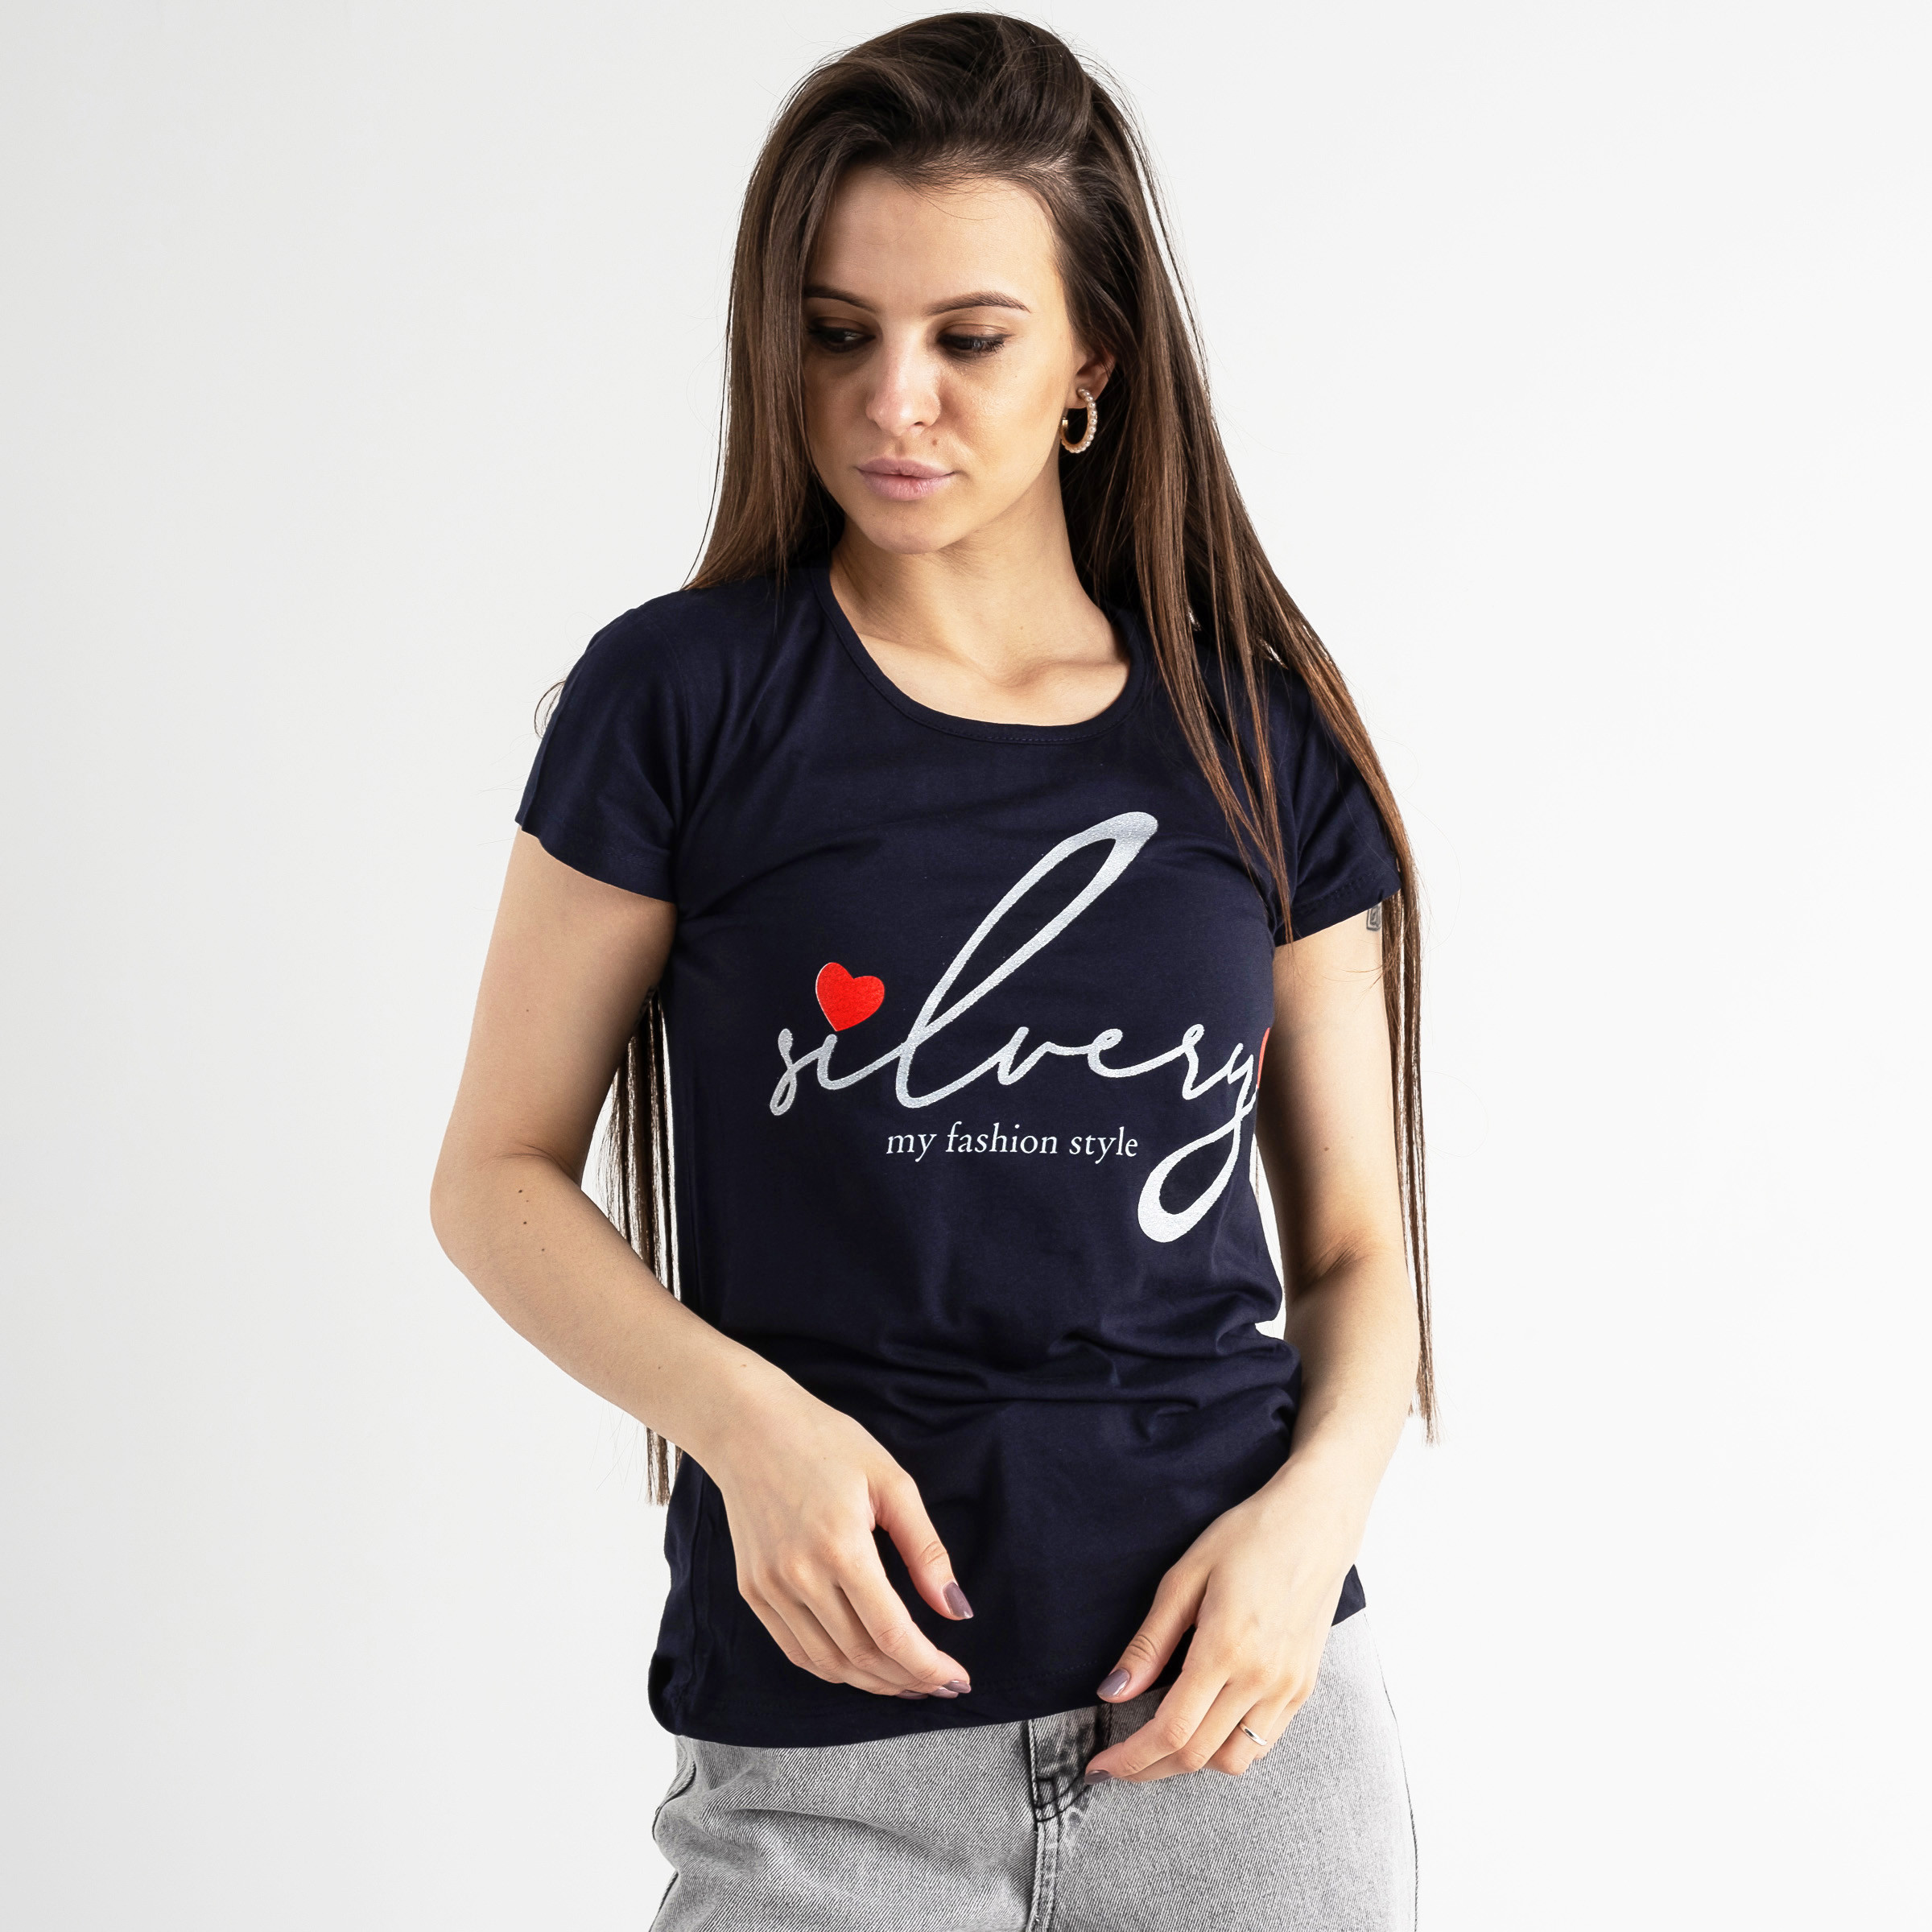 5008-21 ТЕМНО-СИНЯЯ Kafkame футболка женская с принтом ( 4 ед. размеры : S.M.L.XL)